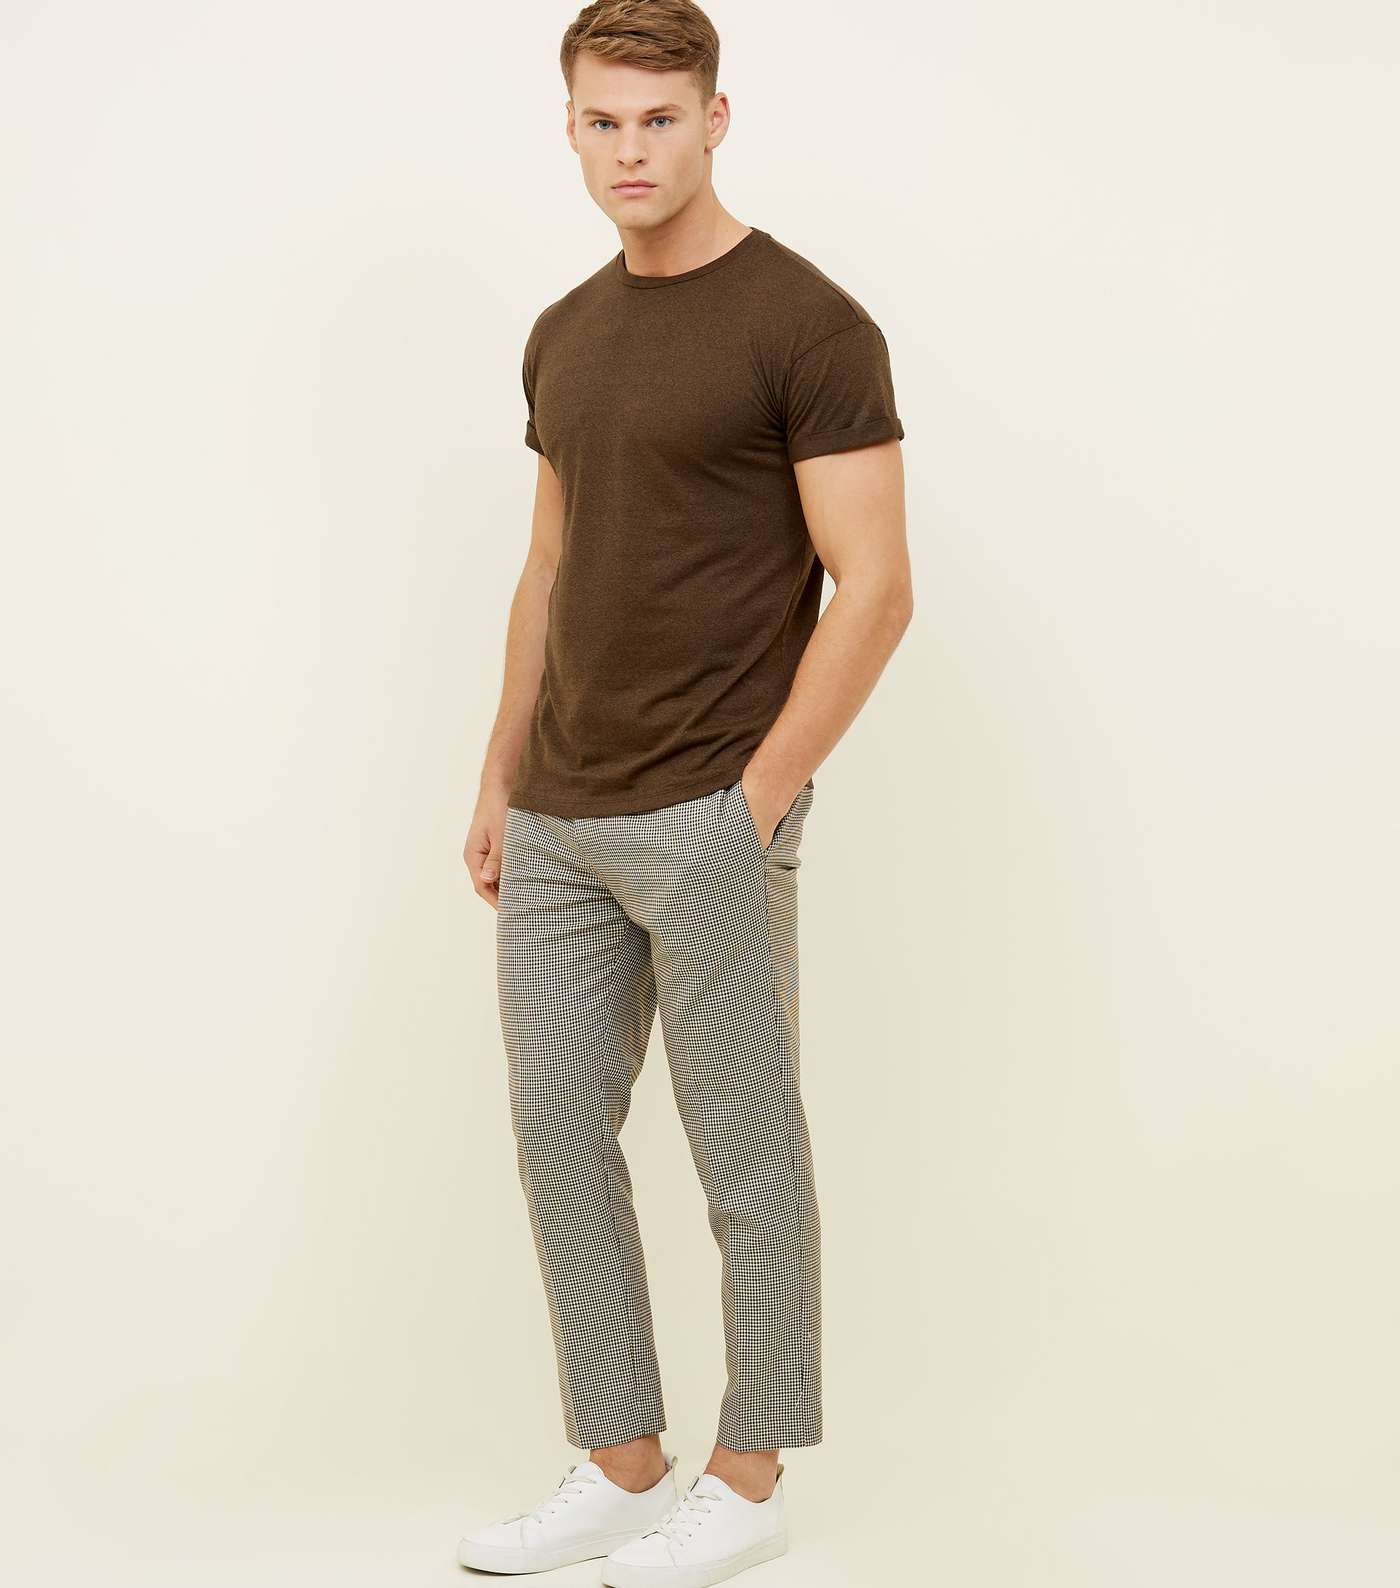 Khaki Marl Rolled Sleeve T-Shirt Image 2